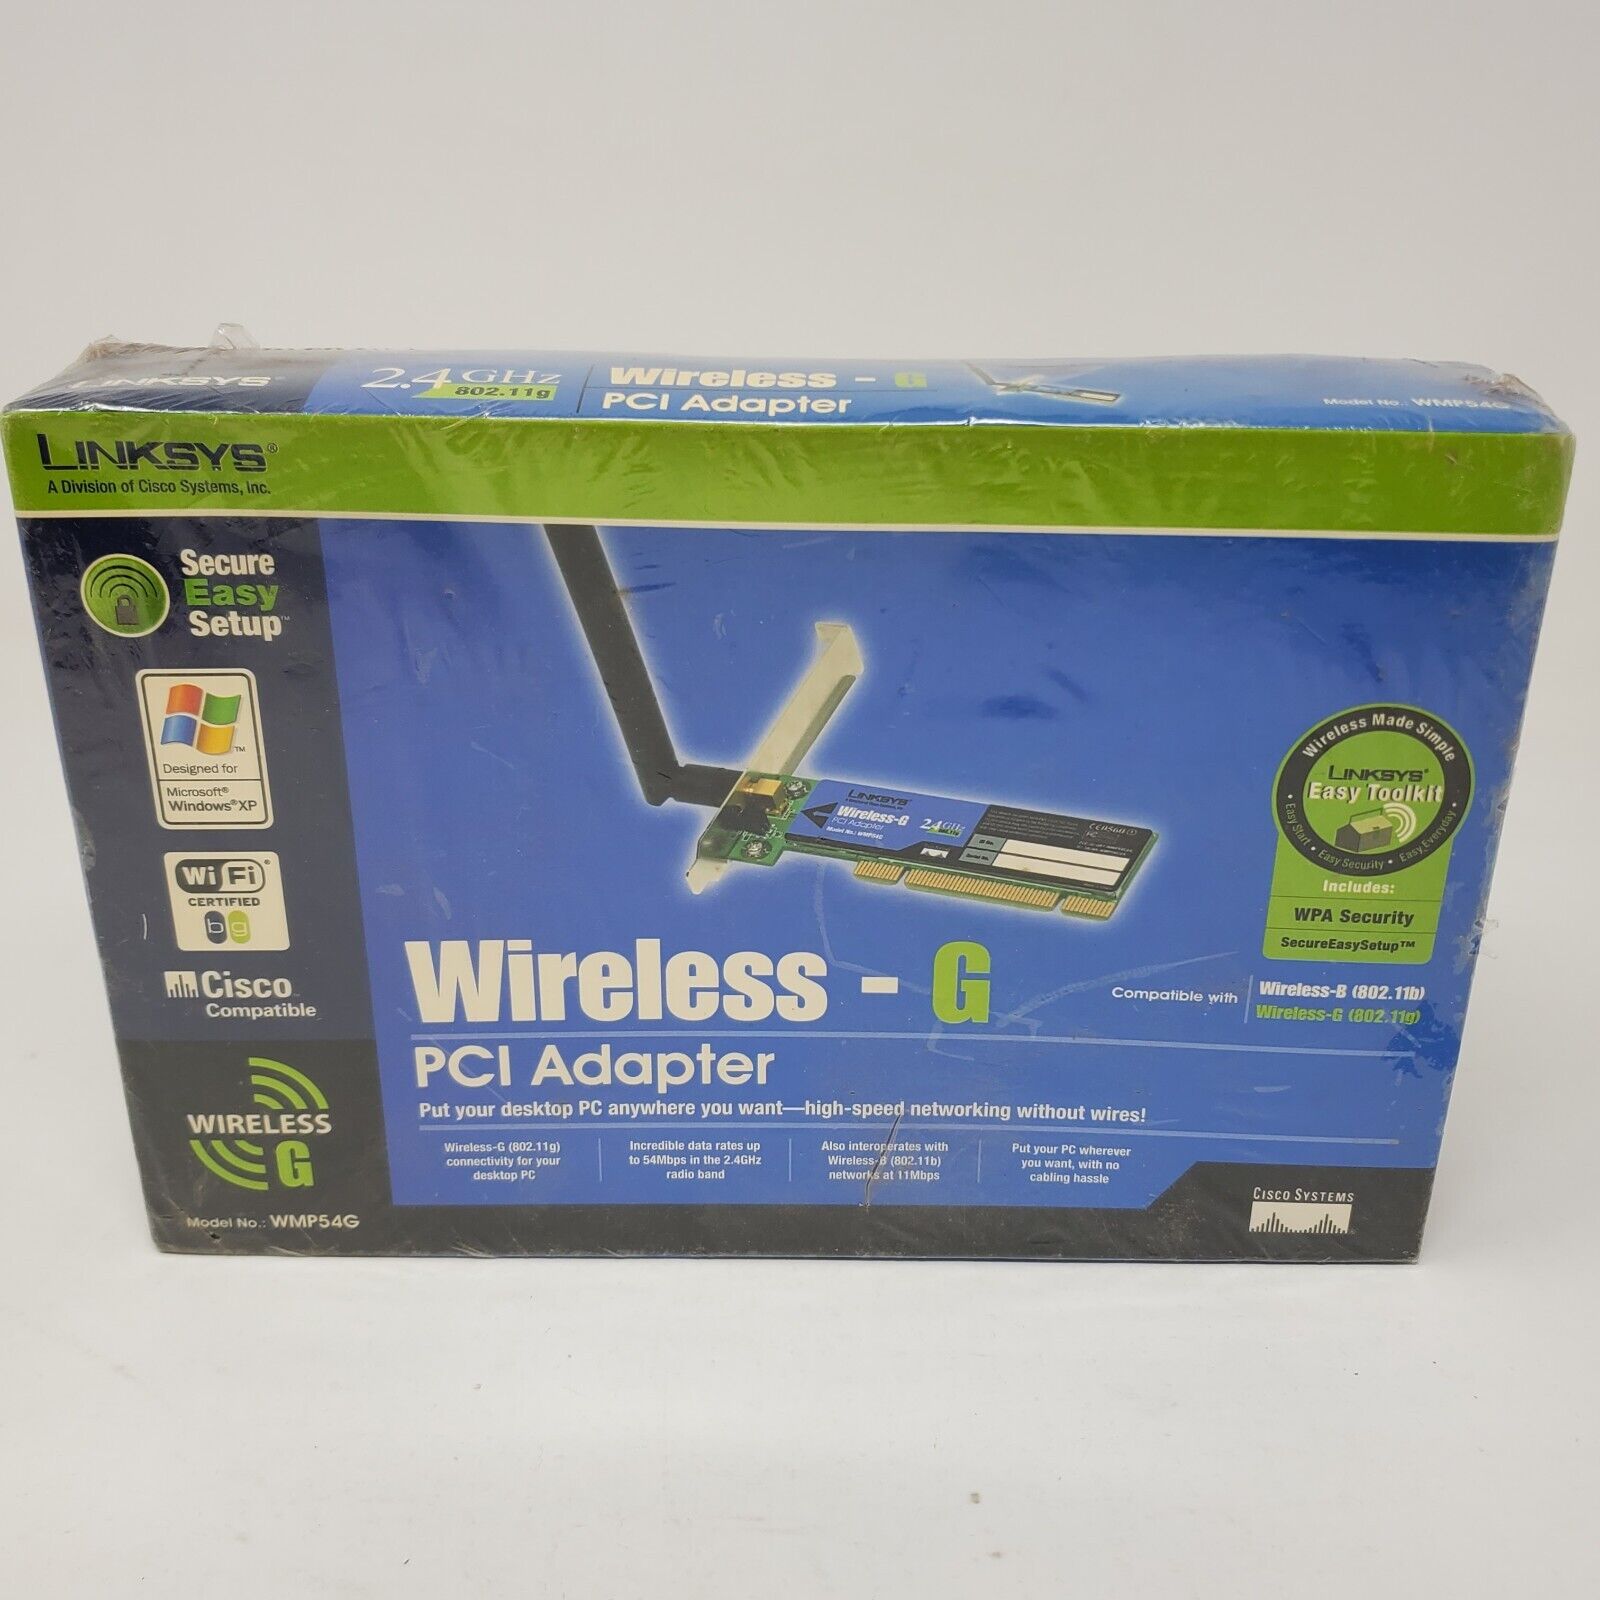 Linksys WMP54G Wireless-G PCI Adapter - WMP54GS - New